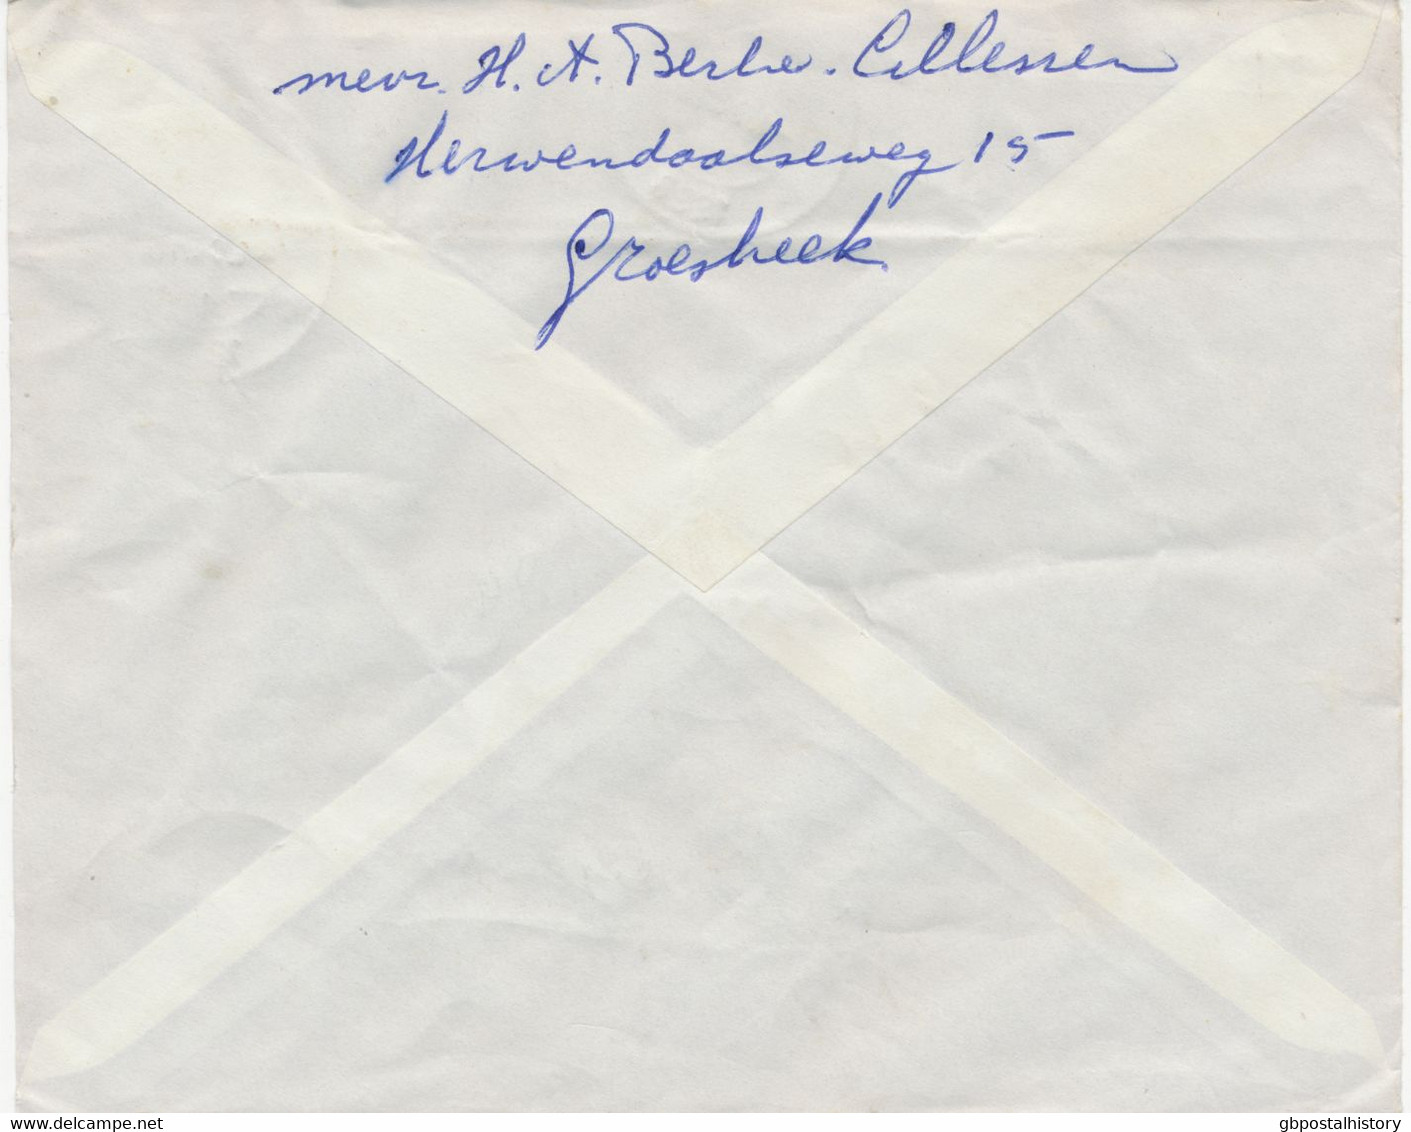 NIEDERLANDE 1968, Königin Juliane 20 C (6) Sehr Selt. Leicht überfrankierte MeF (Porto Betrug 115 C) Auf Kab.-R-Brief - Cartas & Documentos